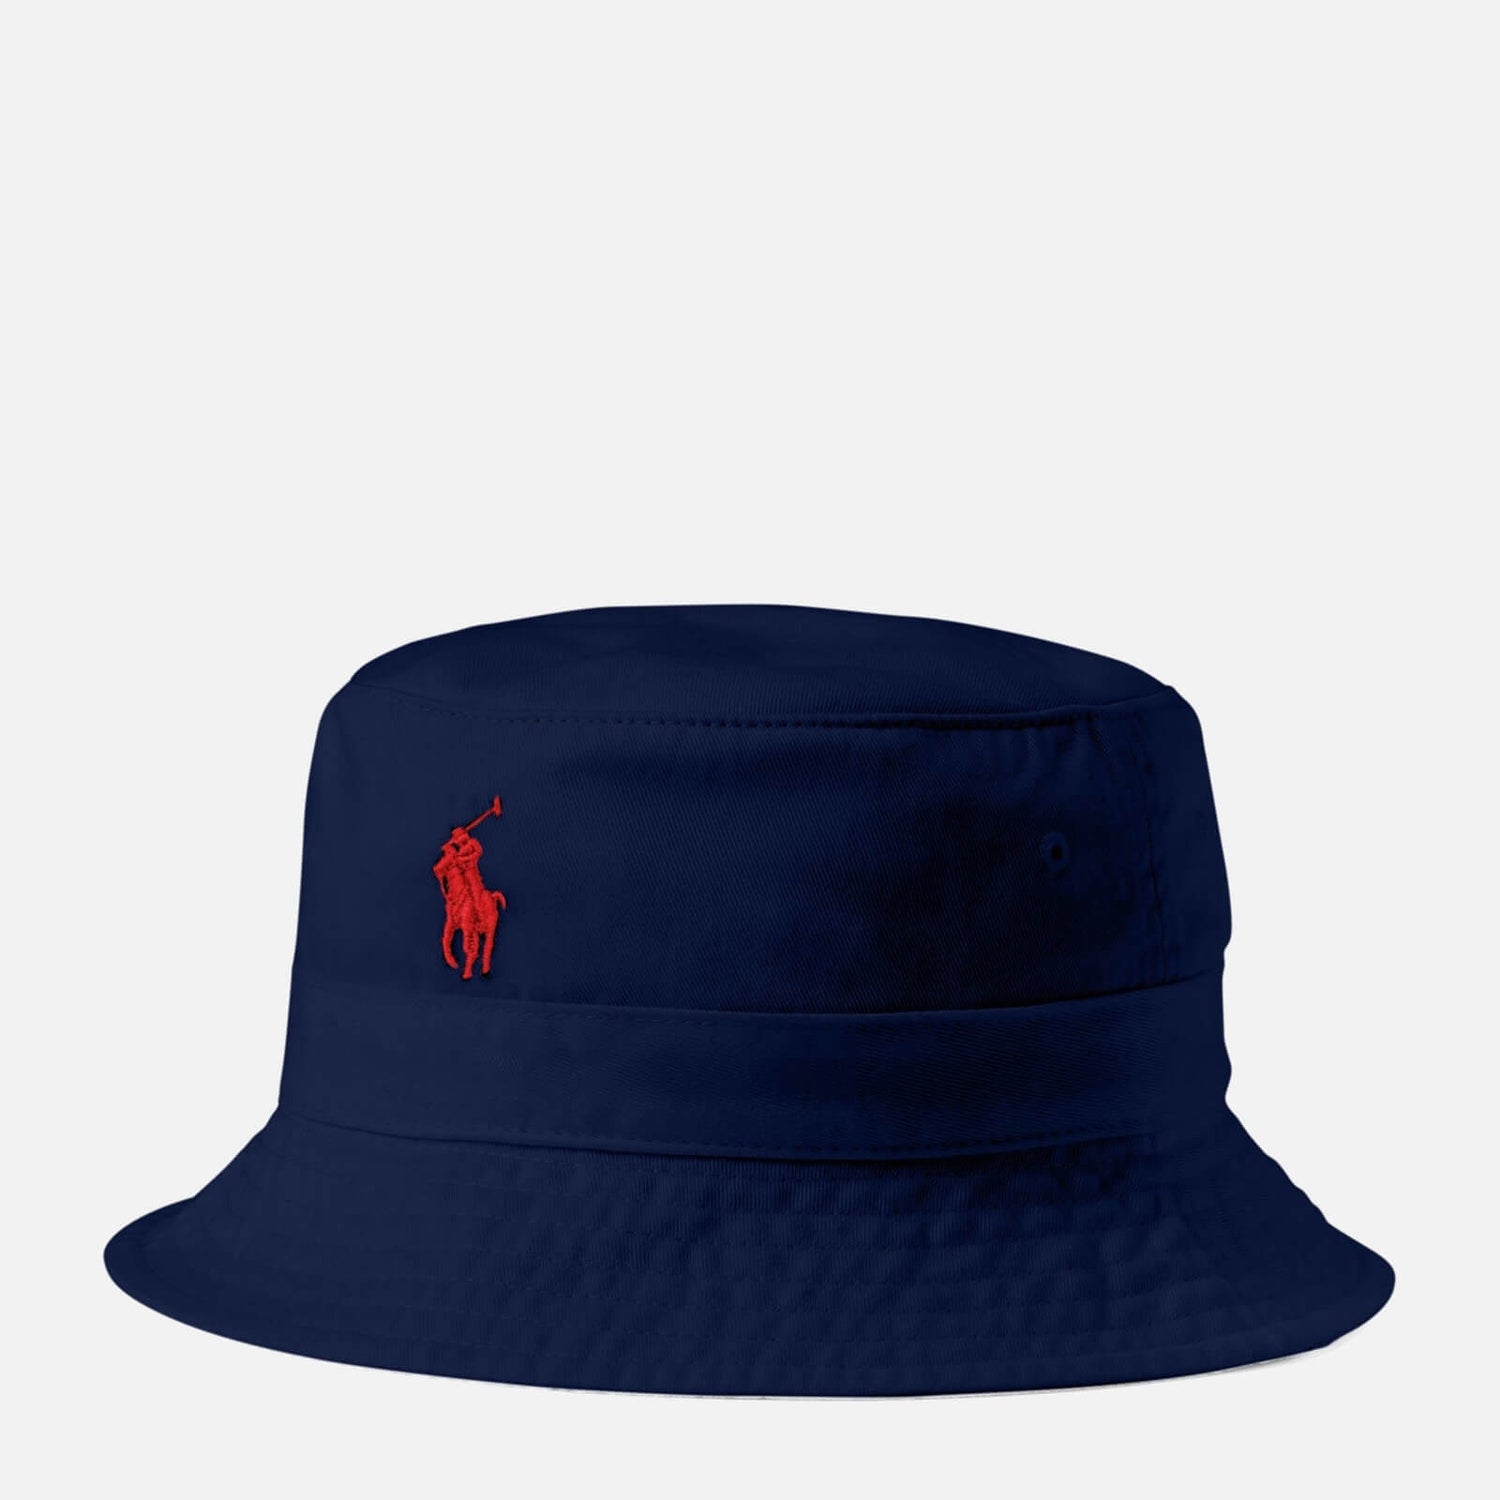 Polo Ralph Lauren Men's Loft Bucket Hat - Newport Navy - S-M